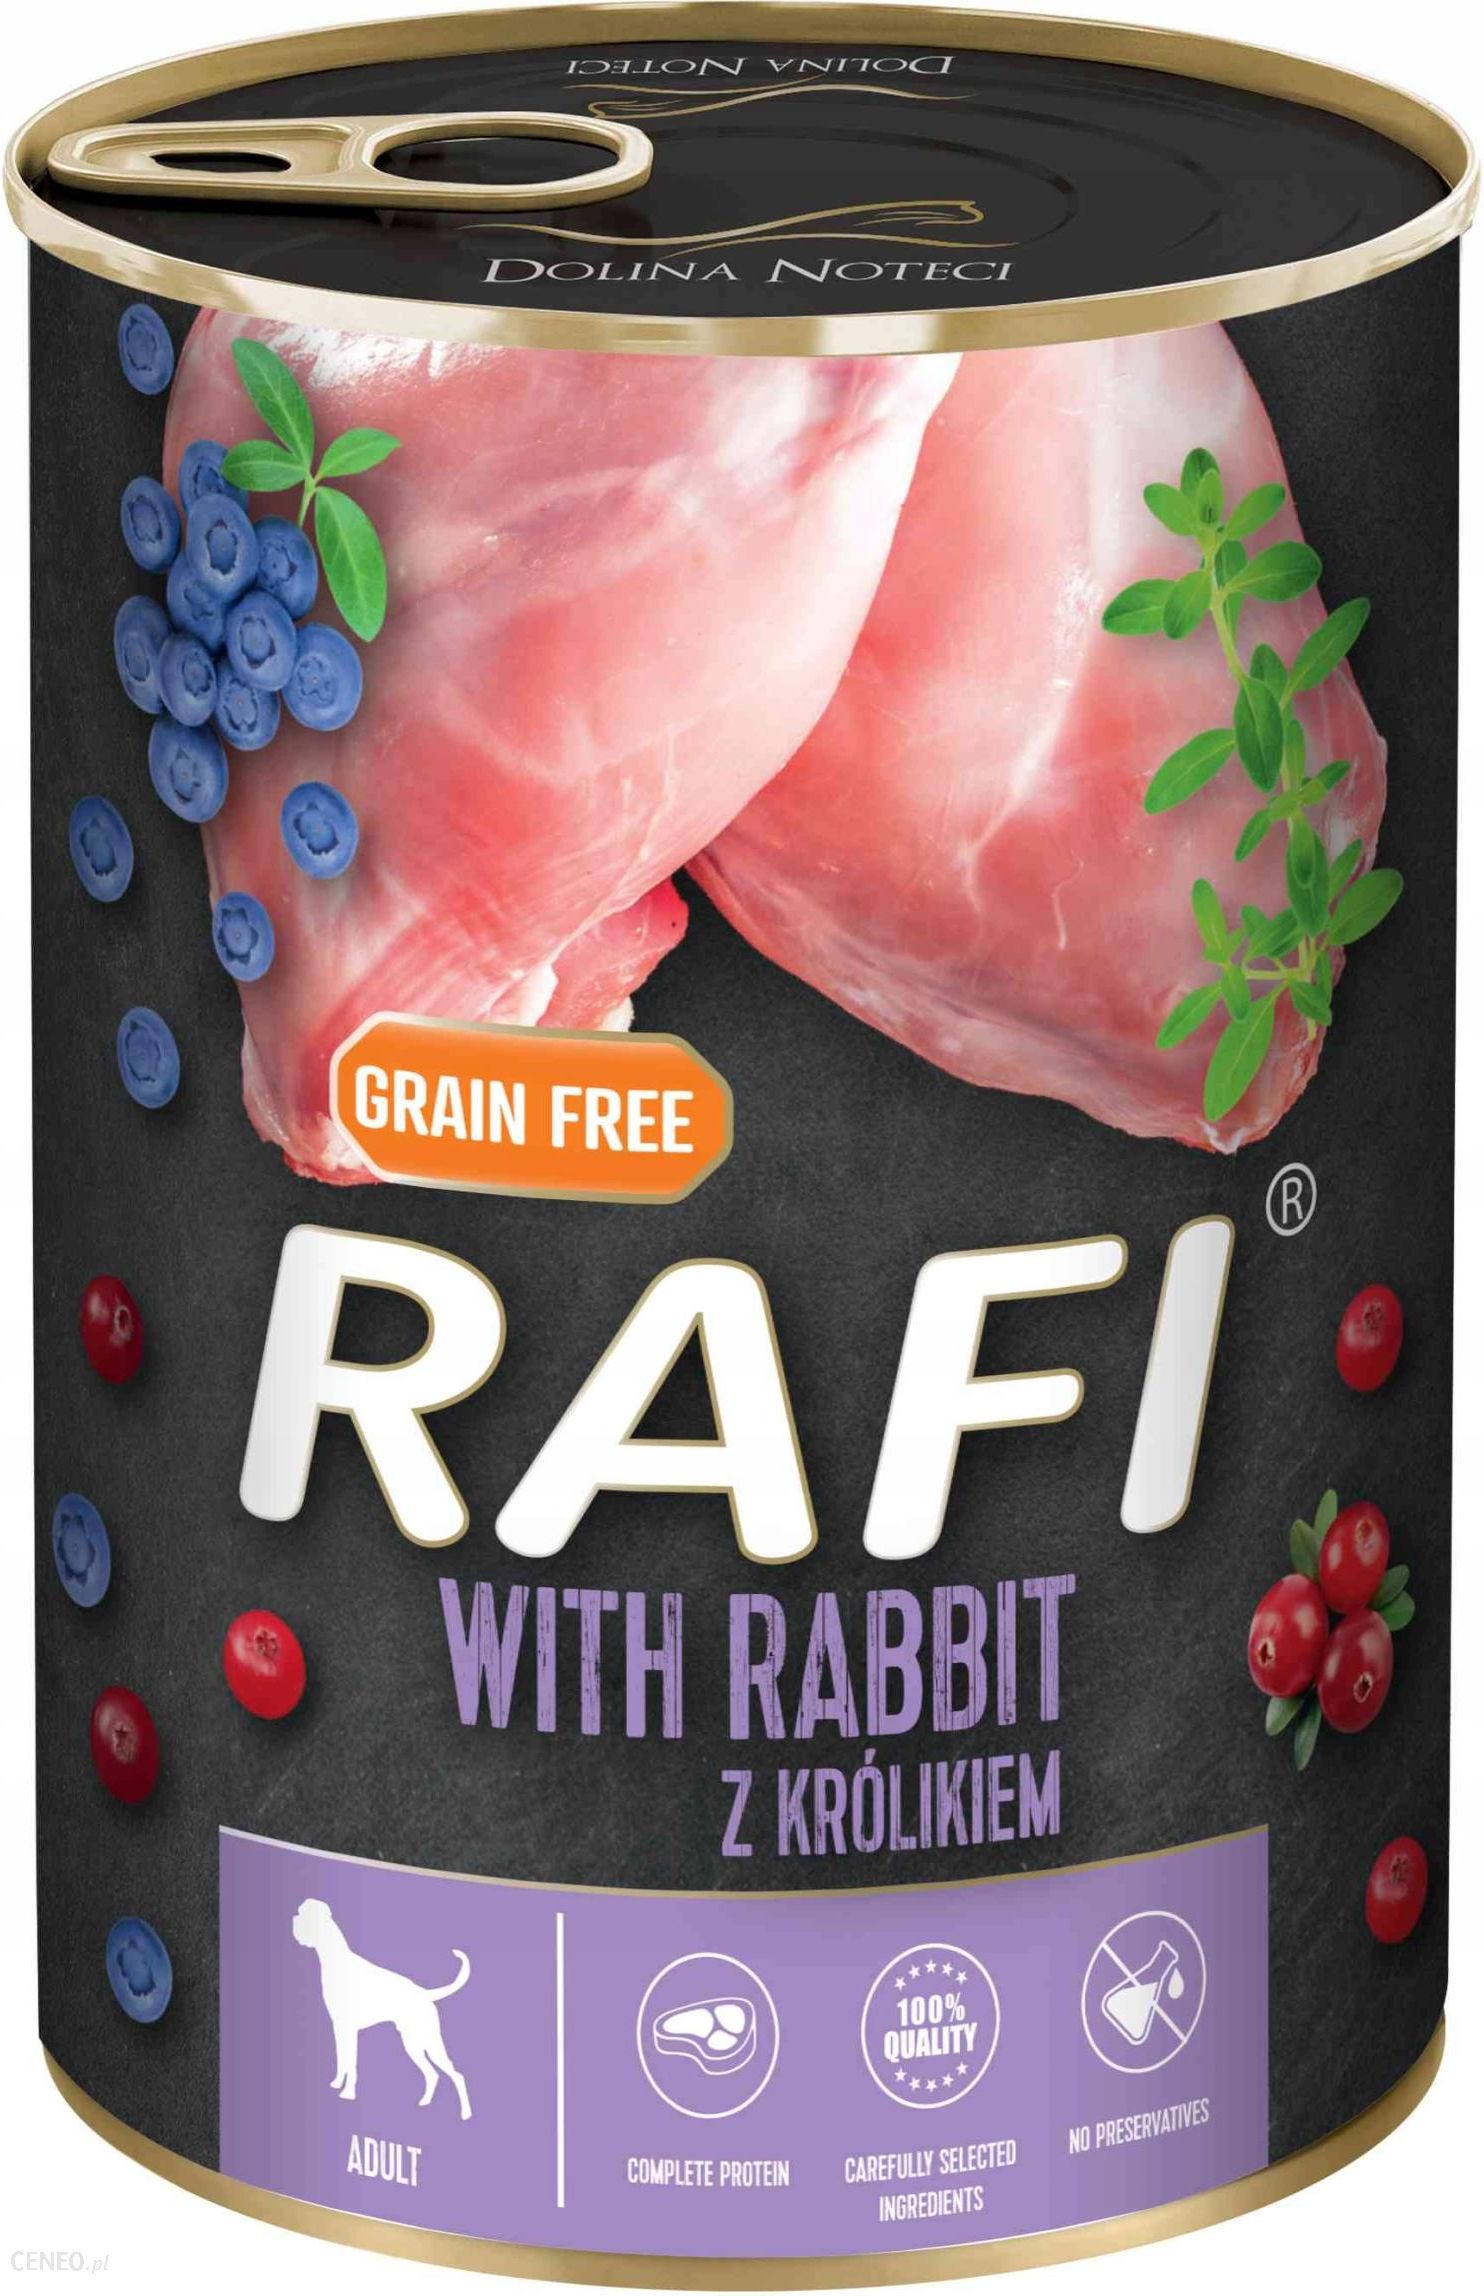 Dolina Noteci Rafi With Rabbit z królikiem 400G